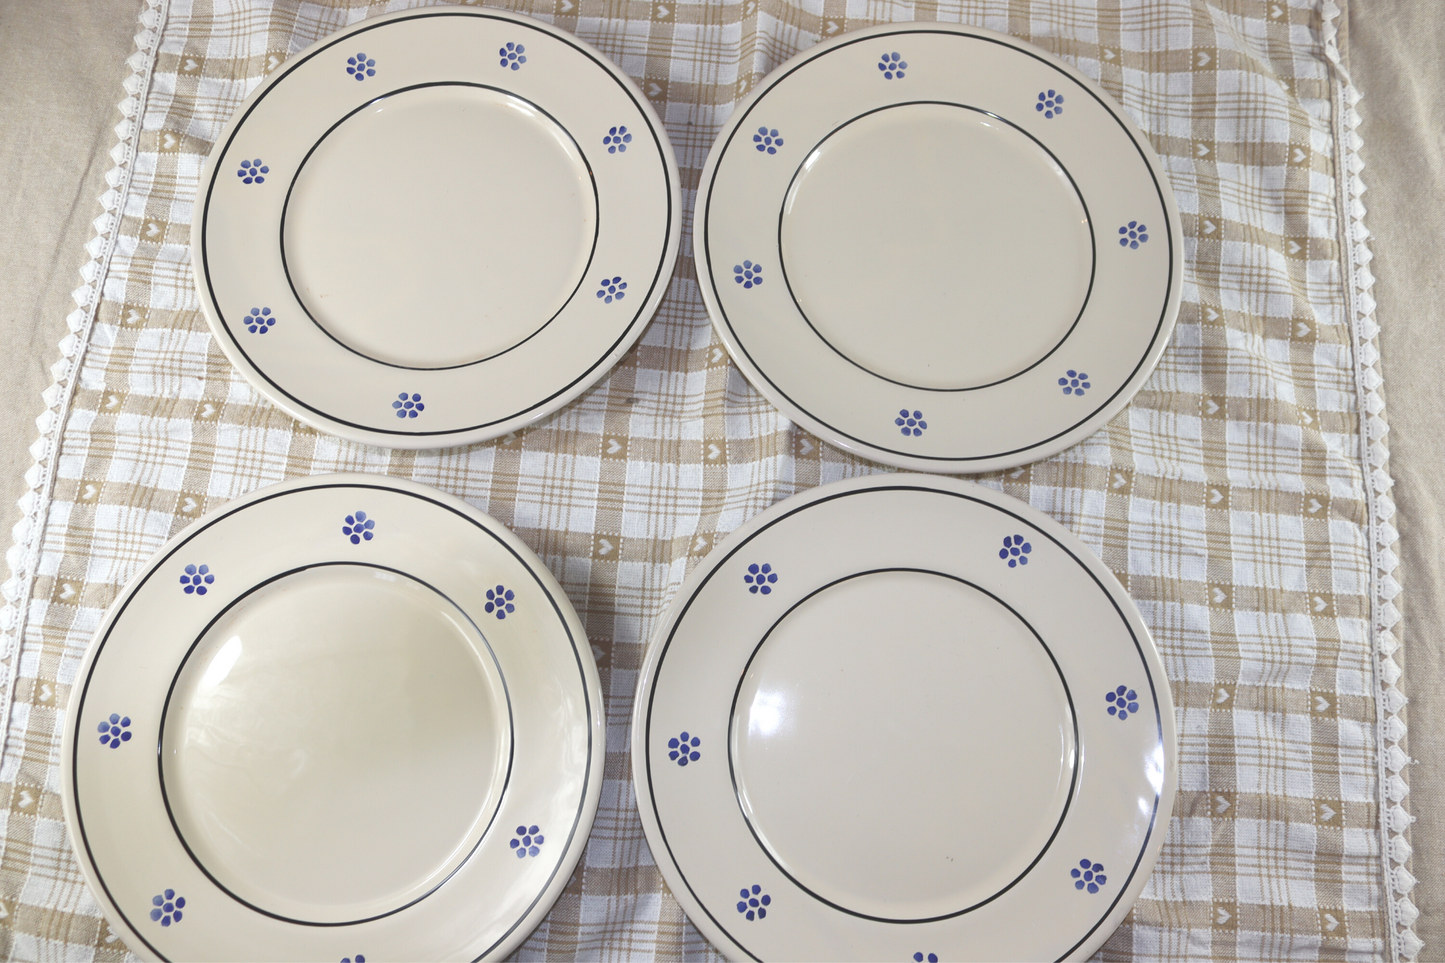 piatti tradizionali in ceramica del sud italia